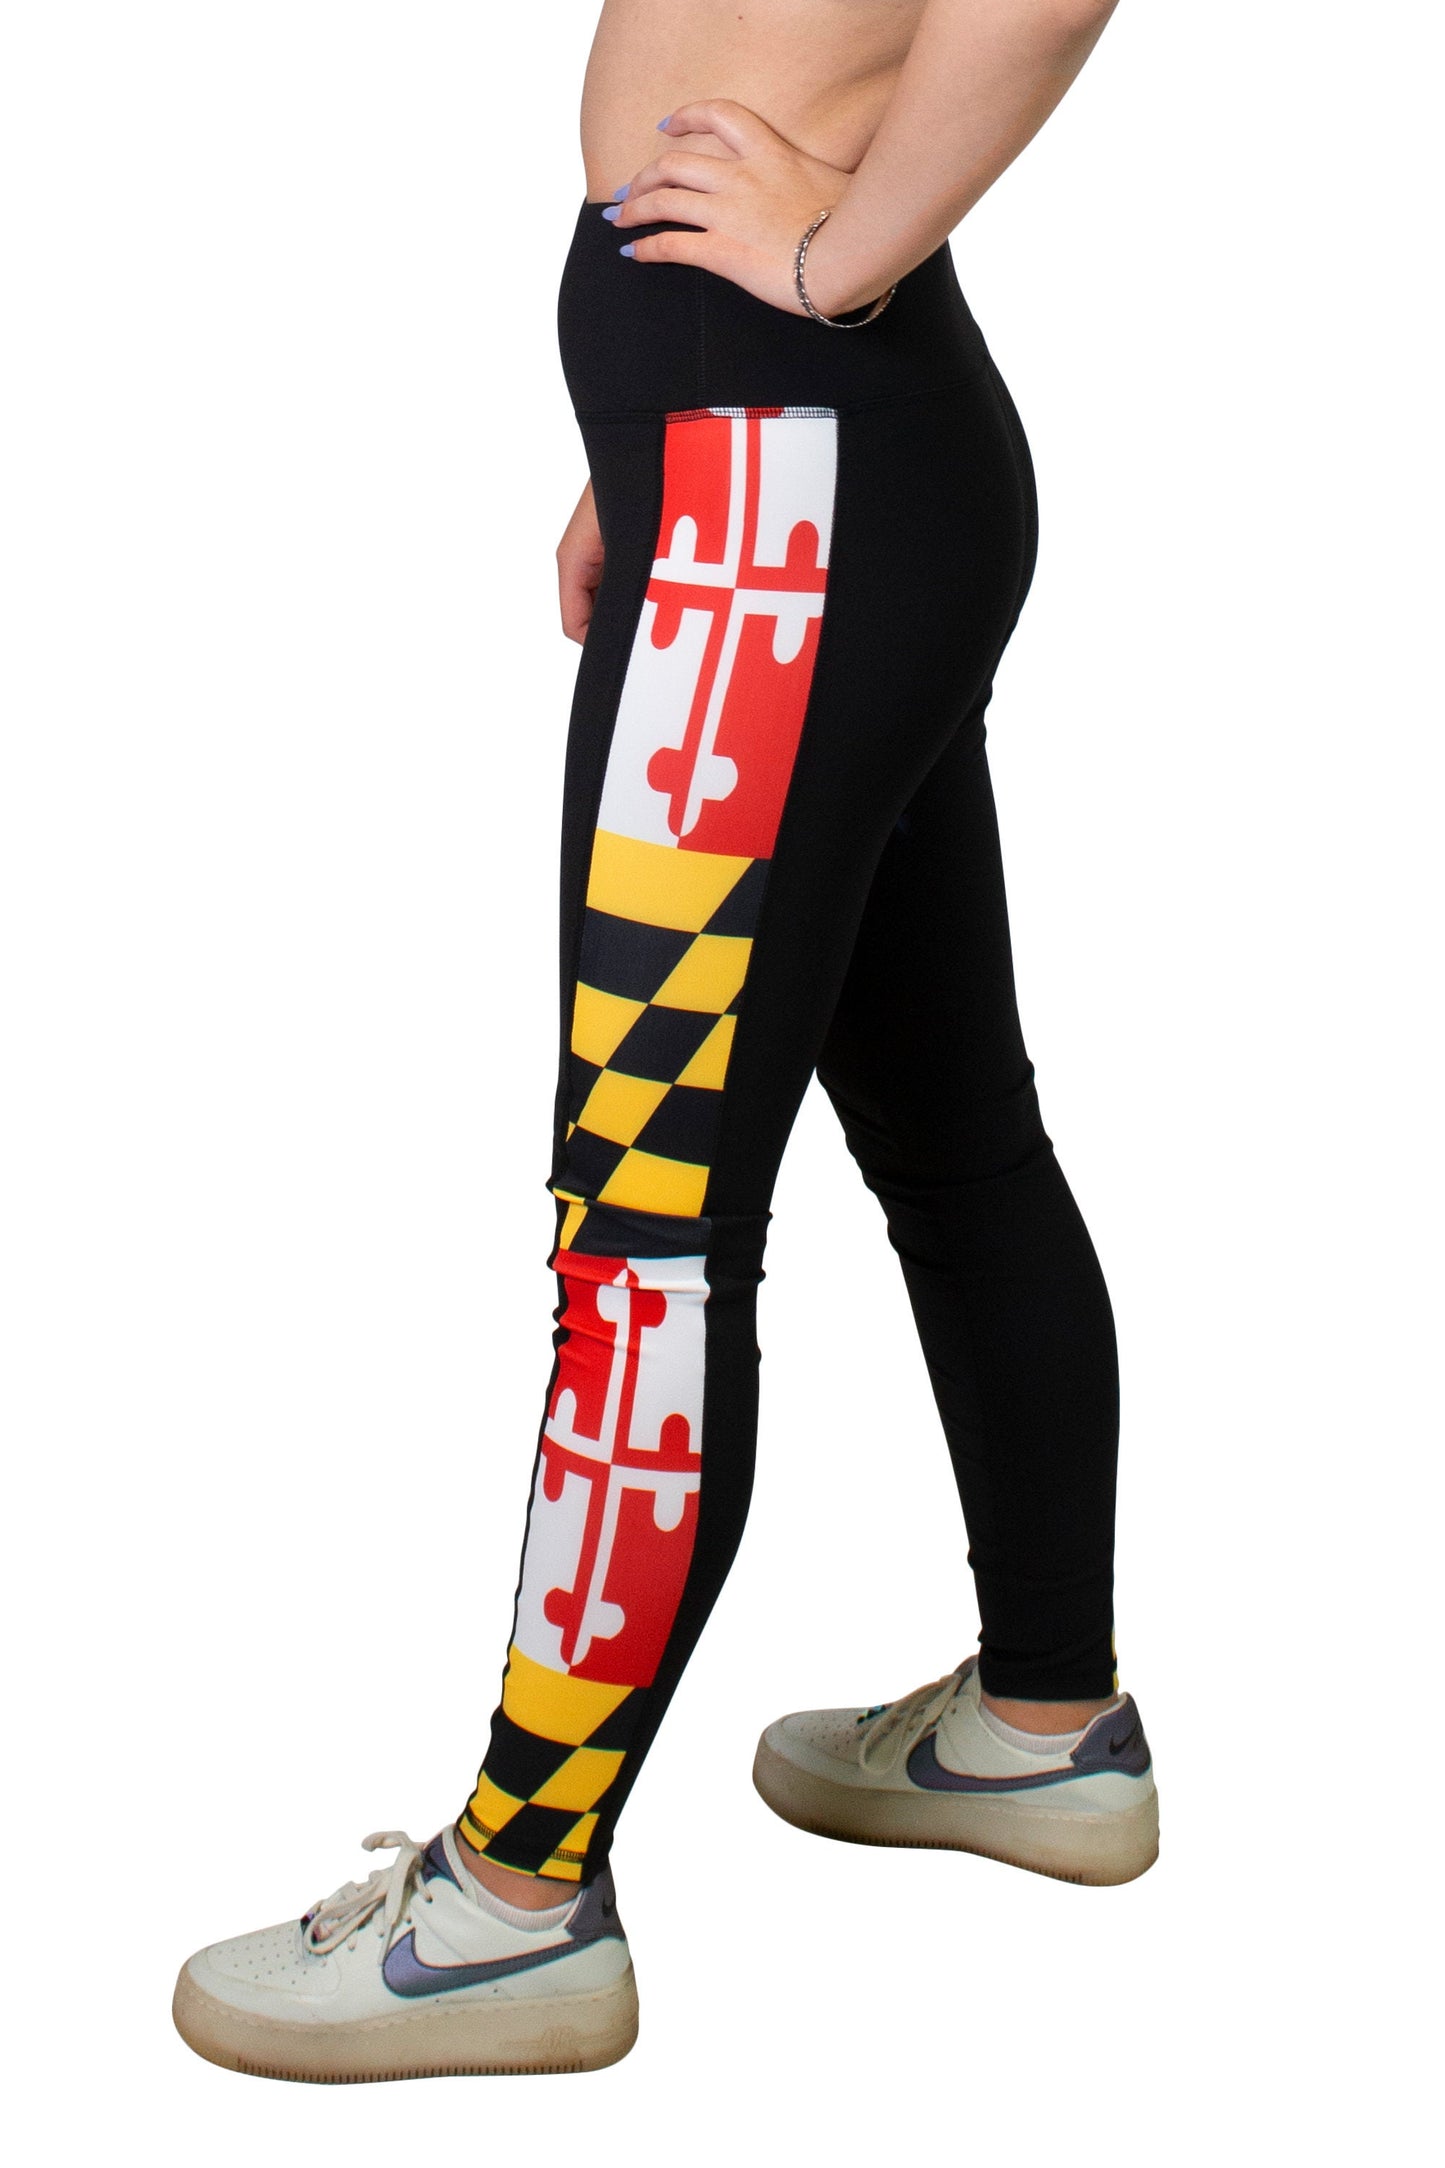 Maryland Flag Women's Full Length Yoga Pant Leggings (Black)